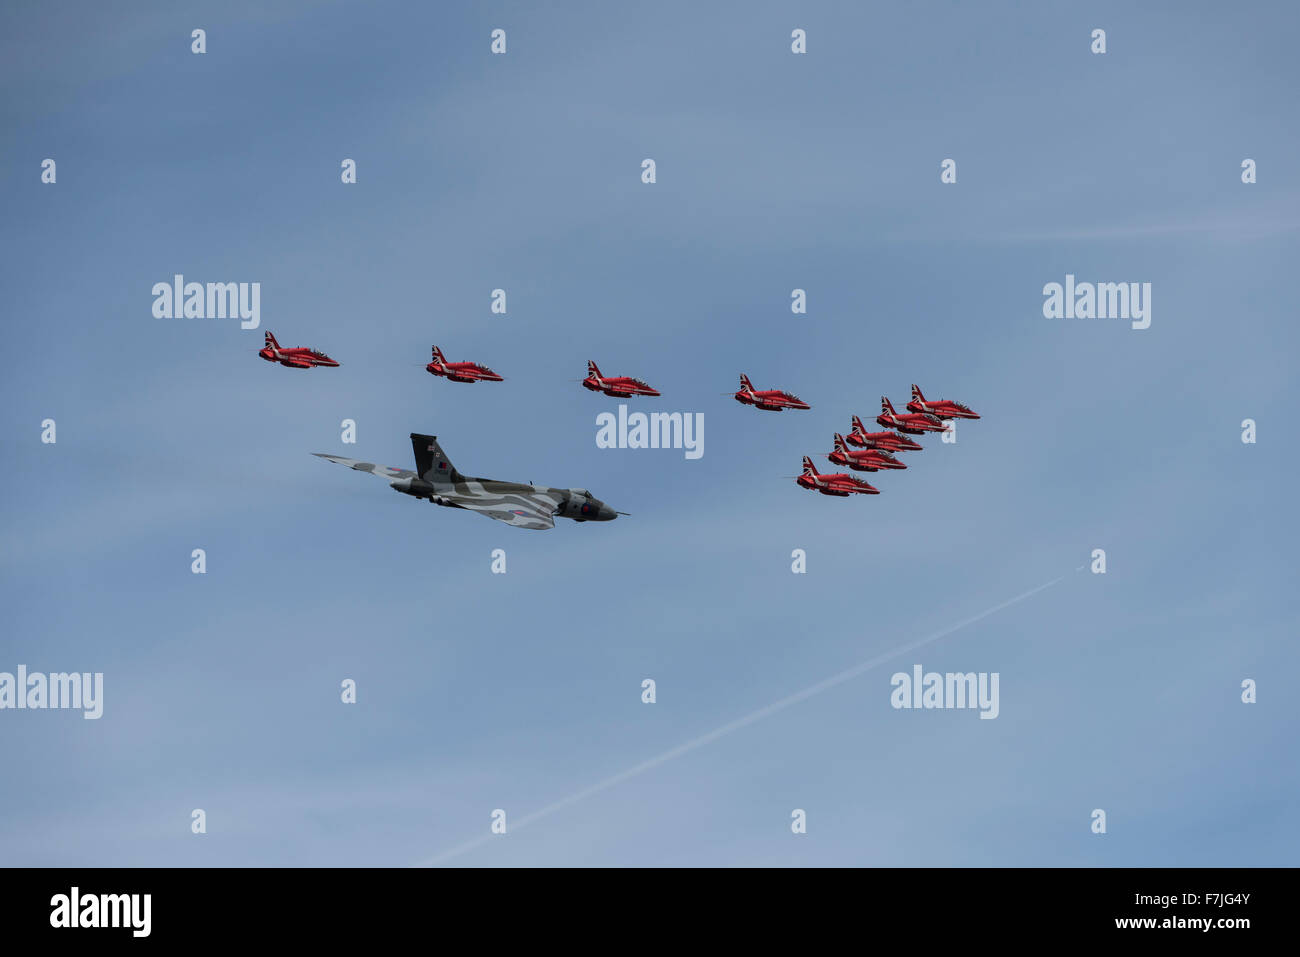 La RAF britannica frecce rosse aerobatic team display volare in formazione con xh558 il solo volare esempio dell'Avro Vulcan Bomber Foto Stock